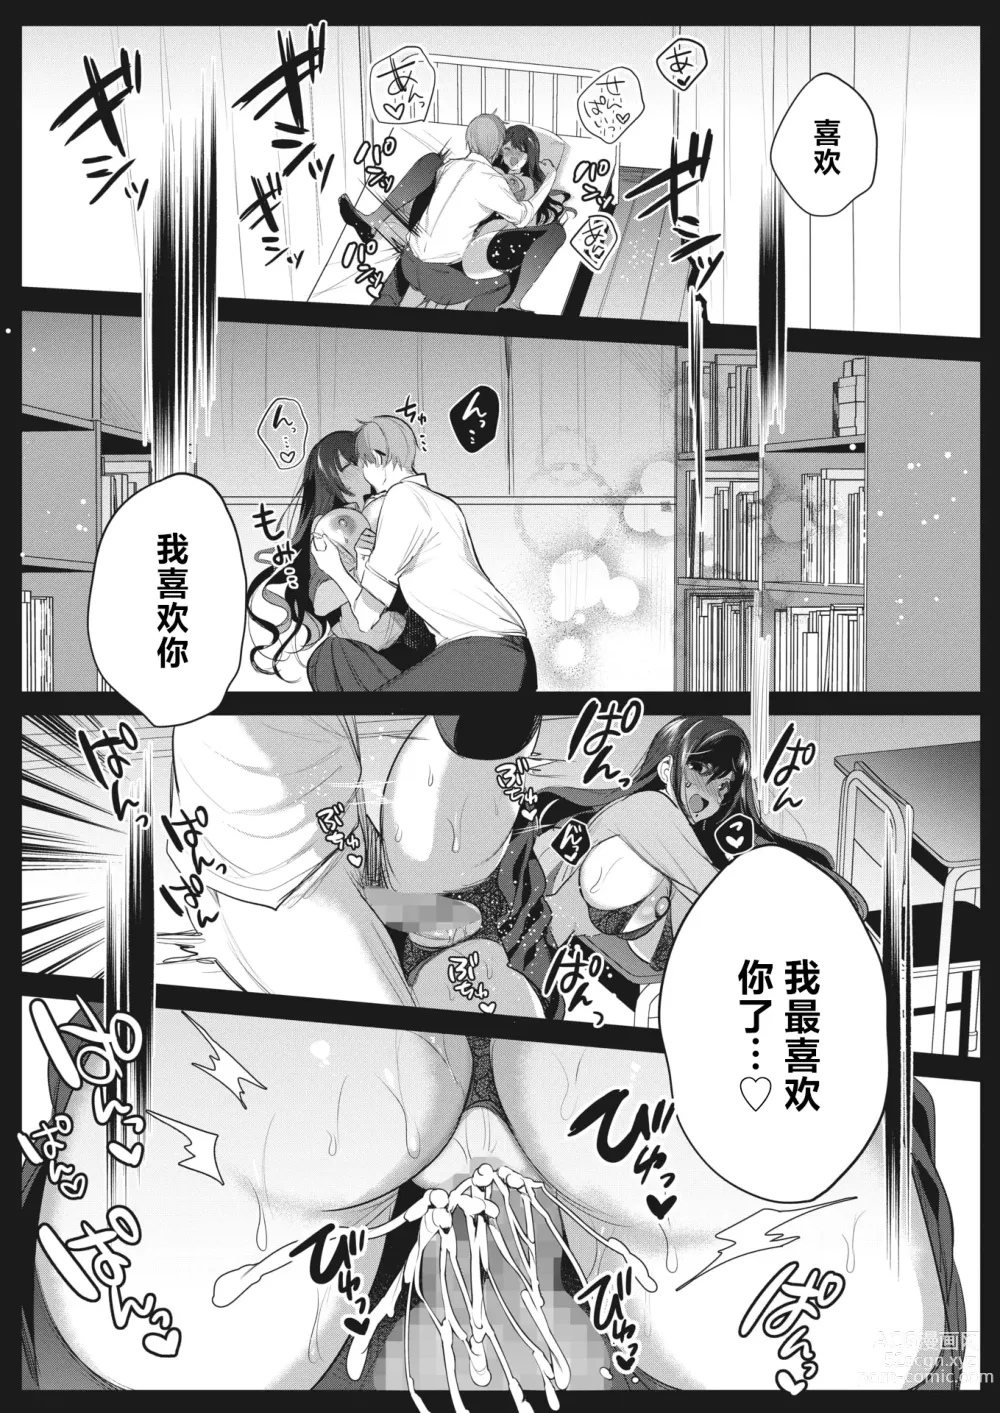 Page 19 of manga Watashi no Mono ni Natte